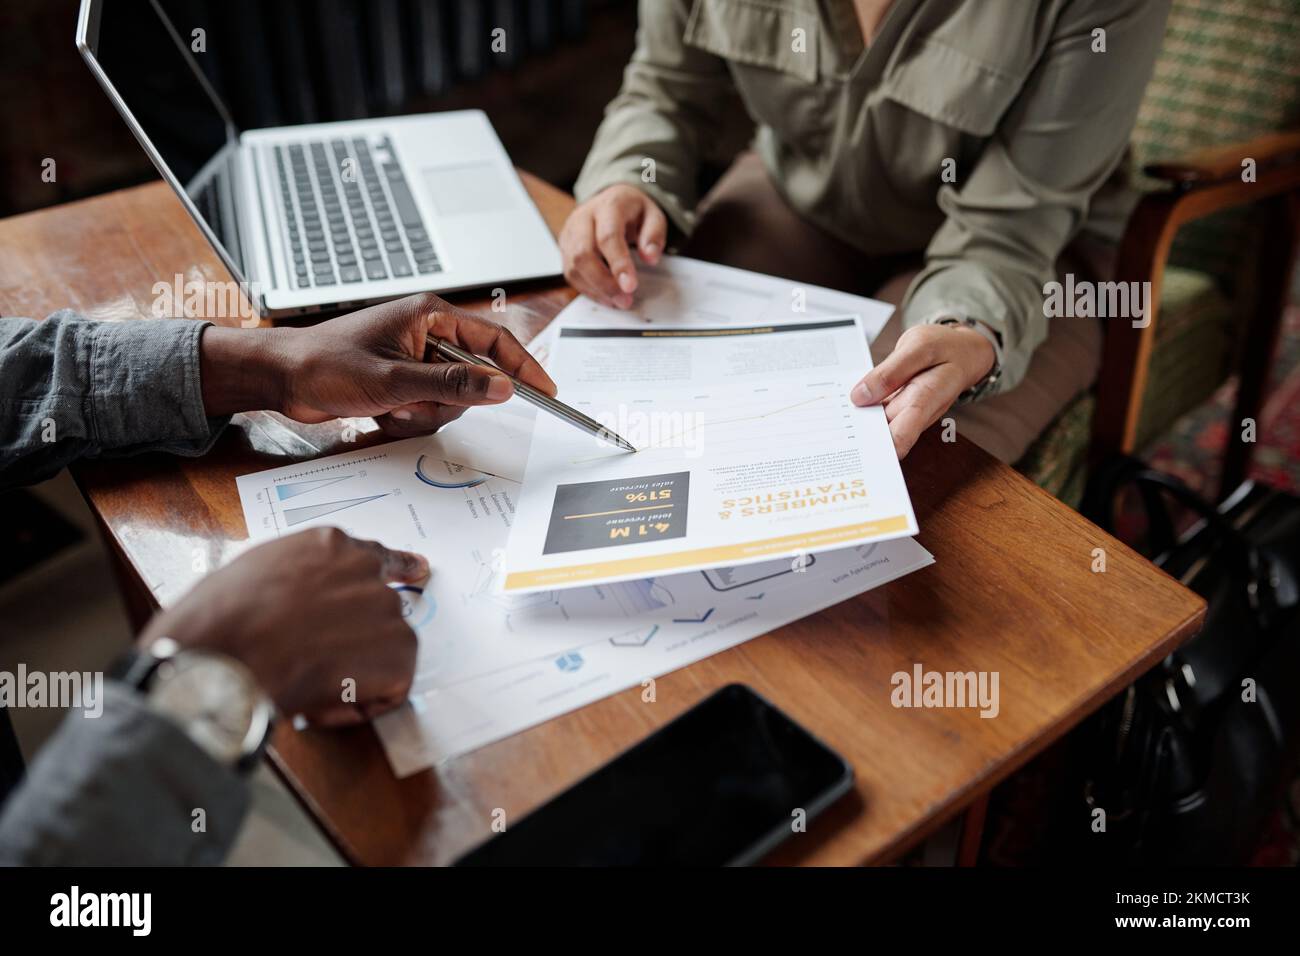 Hand eines jungen schwarzen Mannes mit Stift, der auf ein Finanzdokument zeigt, während er der Kollegin während des Gesprächs Daten erklärt Stockfoto